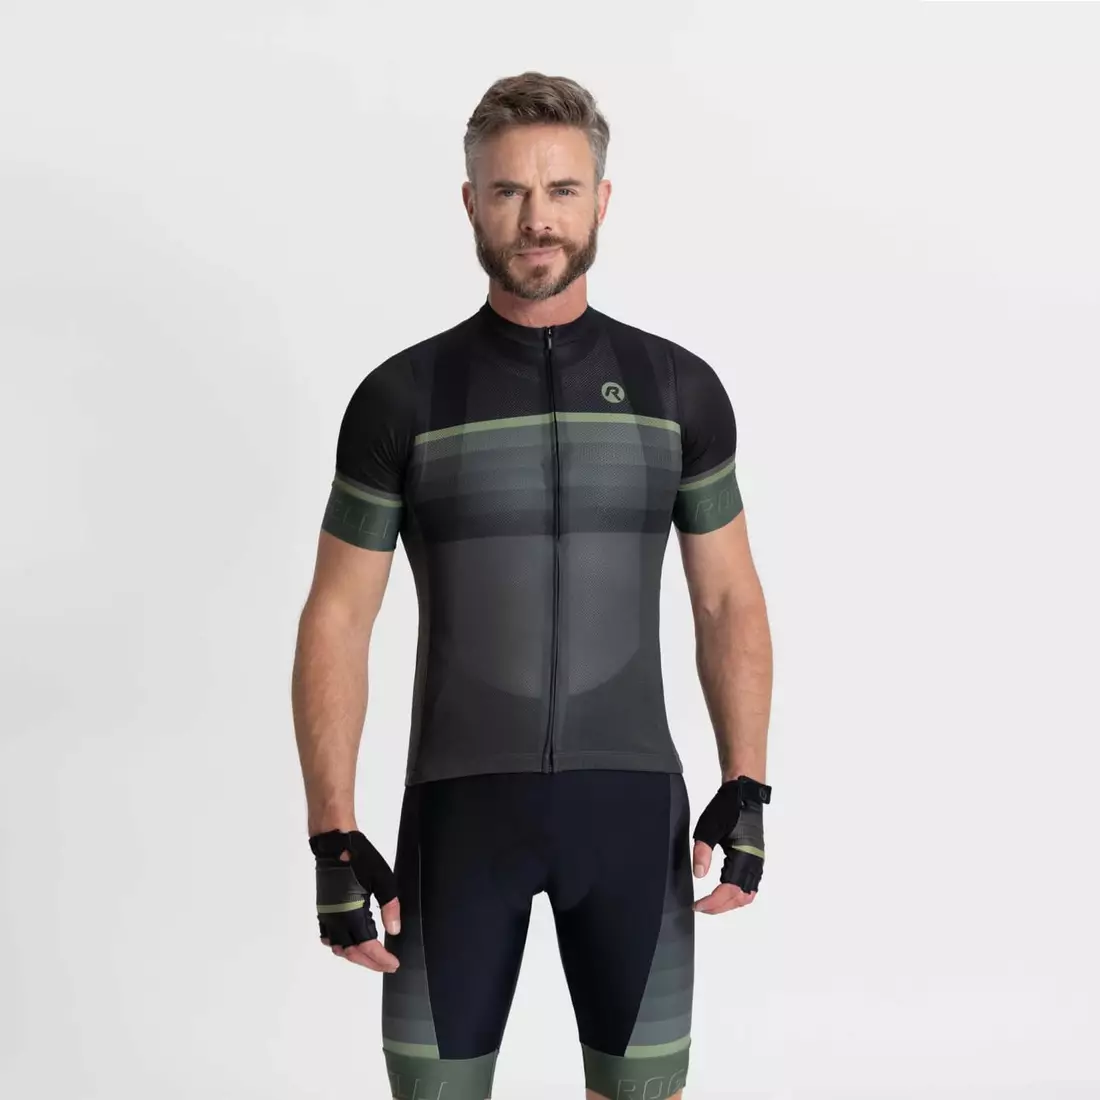 Rogelli HERO II męska koszulka rowerowa, czarno-zielona